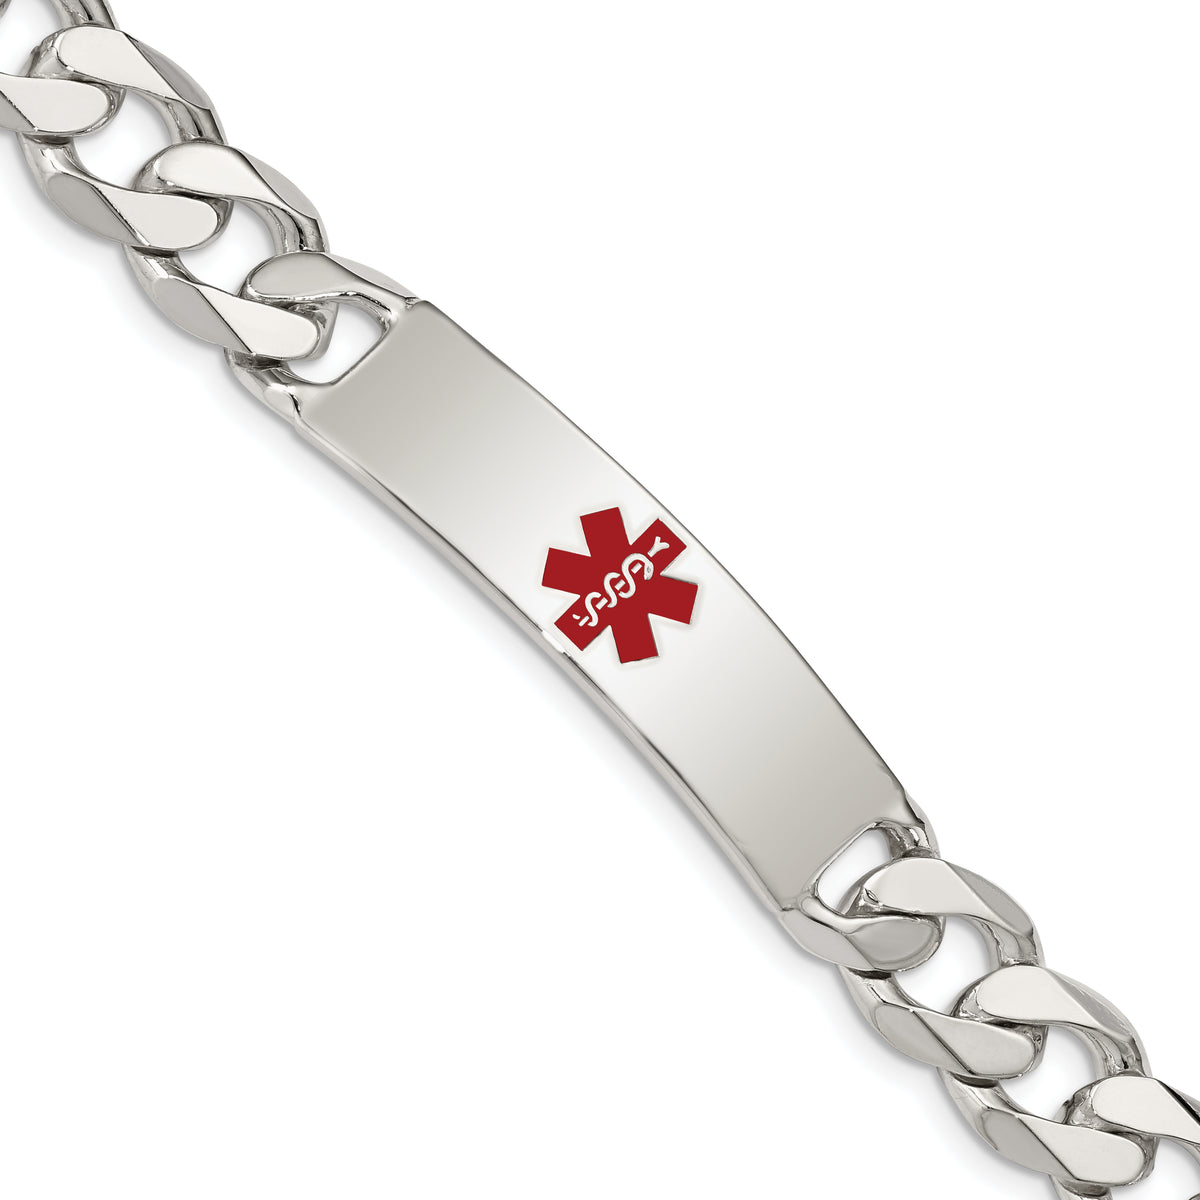 Sterling Silver Polished Medical Curb Link ID Bracelet